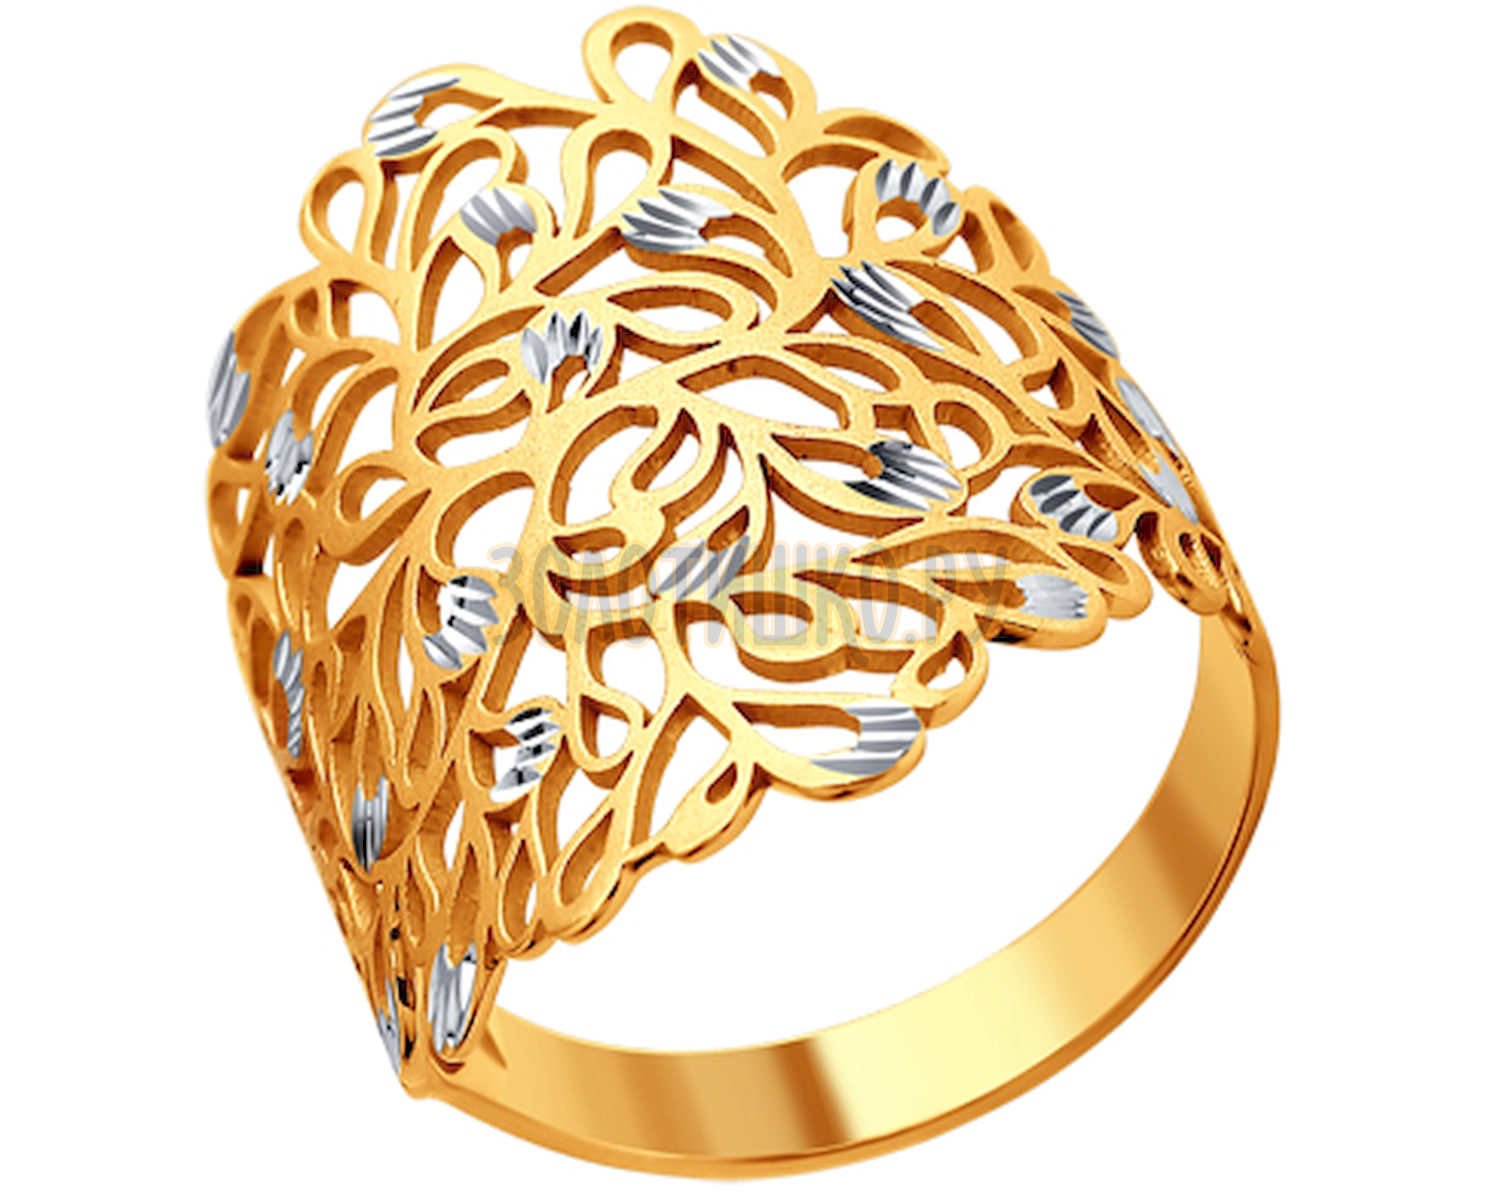 Золотые изделия на заказ. SOKOLOV кольцо «Лис» 93010668. Золотые кольца 585 без камней. Золотые ажурные кольца в золото 585. Золотые кольца женские без камней из золота 585.